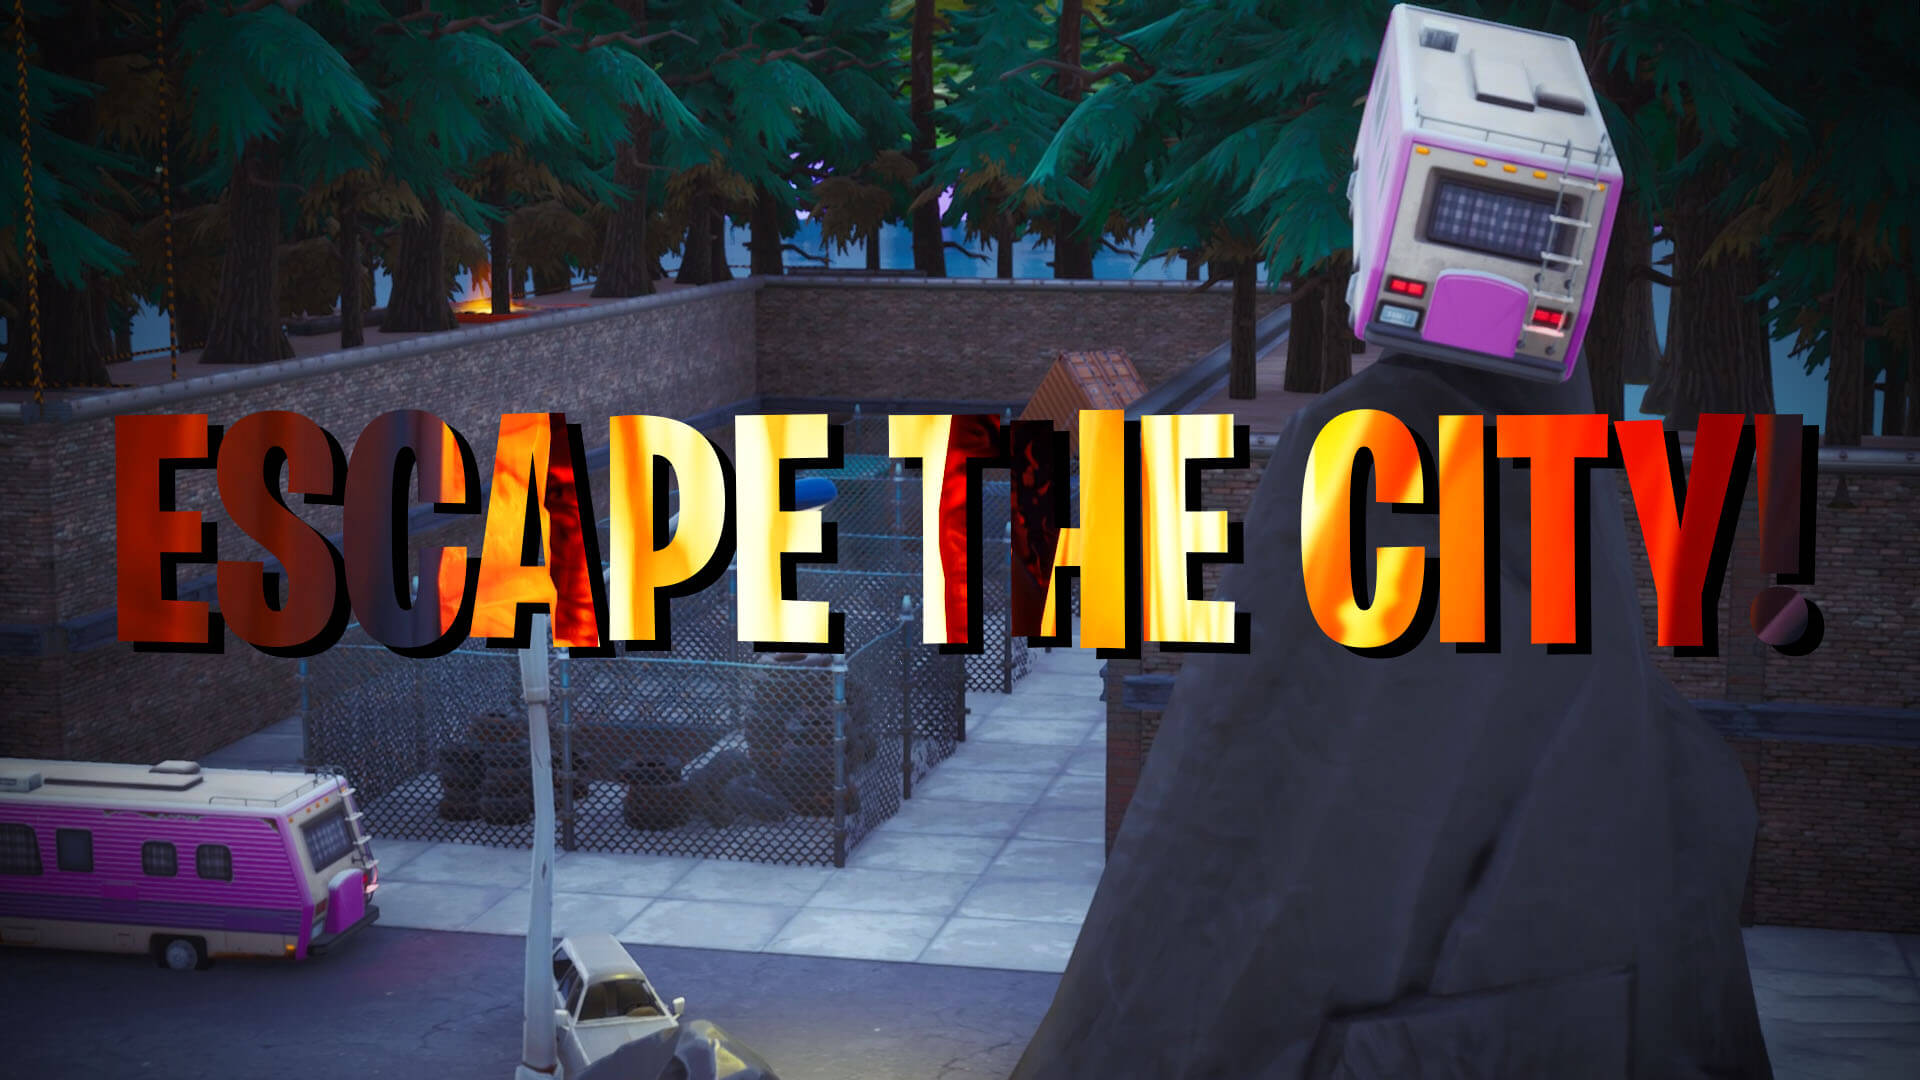 ESCAPE THE CITY!